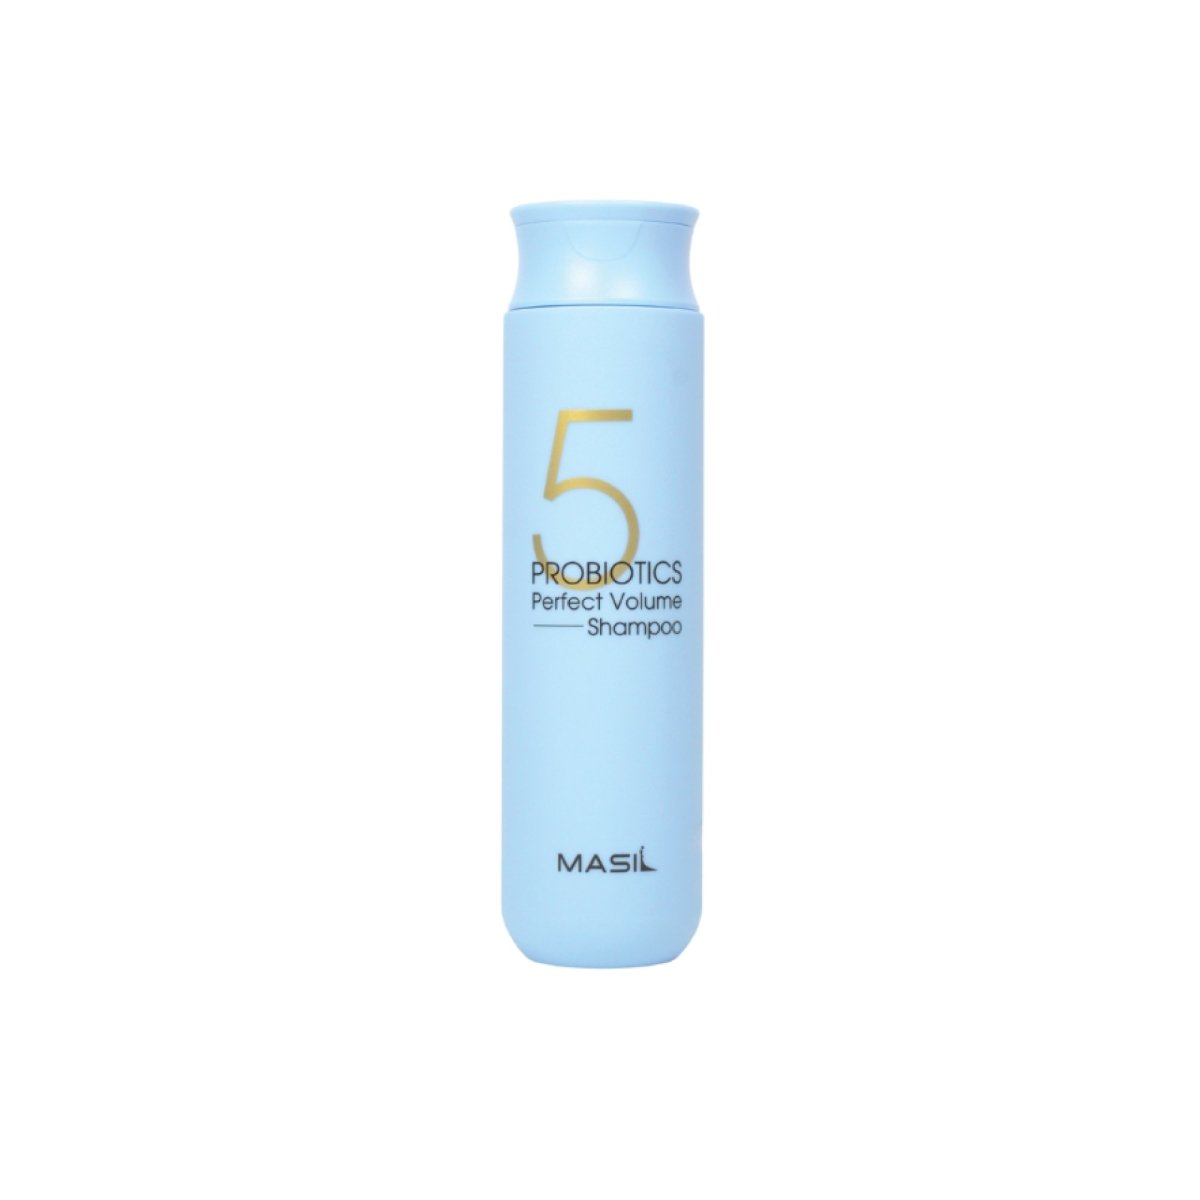 MASIL - Probiotics Perfect Volume Shampoo - Stellar K-Beauty